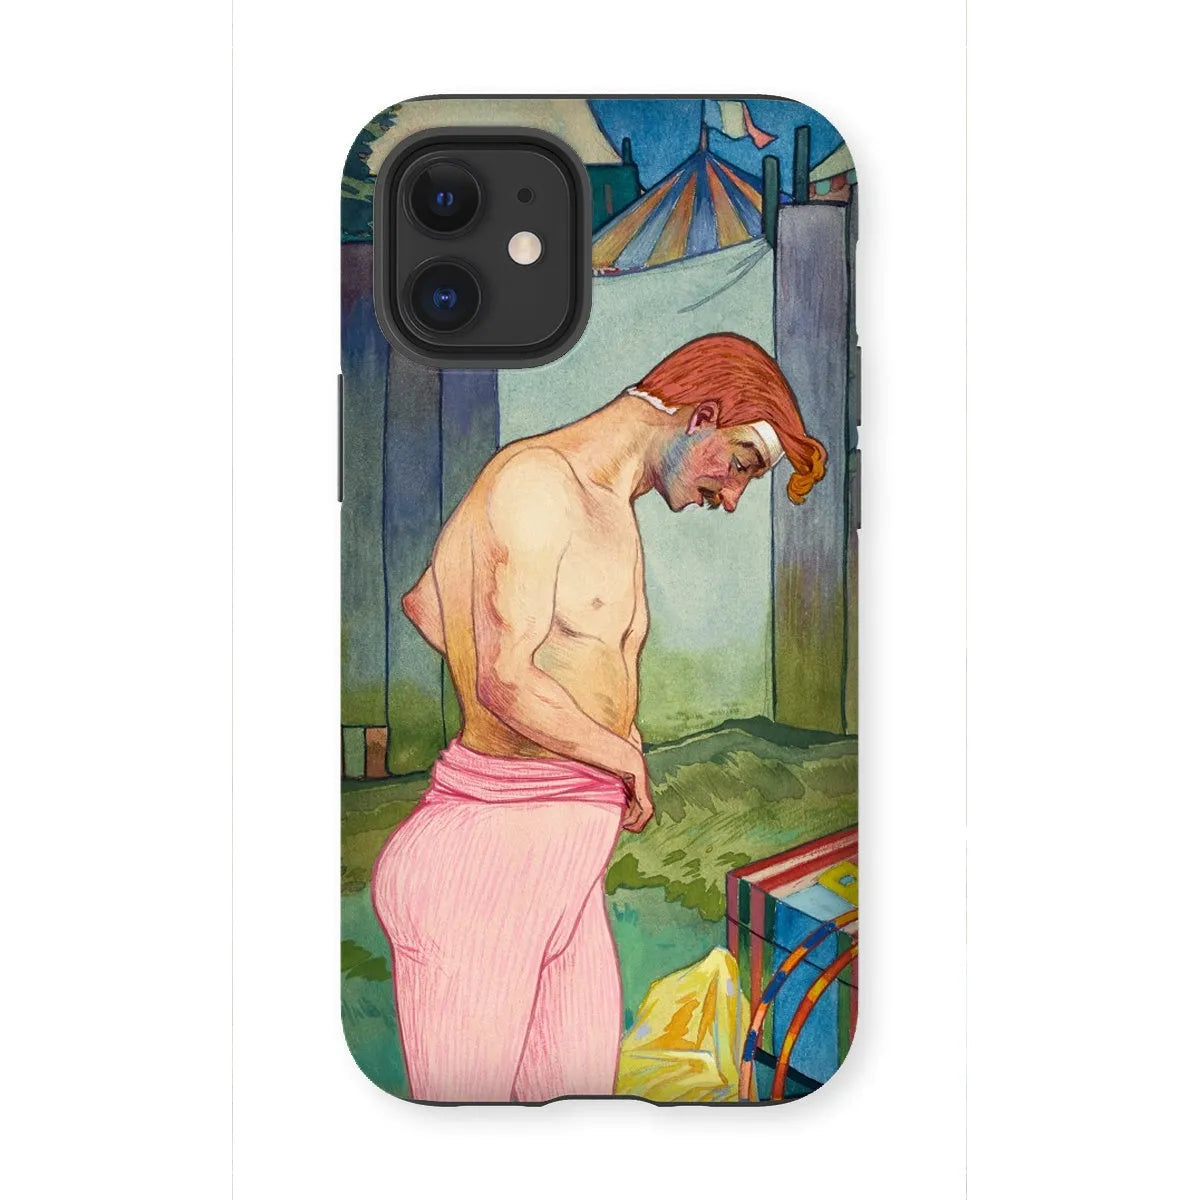 Le Cirque Corvi - French Art Phone Case - Georges De Feure - Iphone 12 Mini / Matte - Mobile Phone Cases - Aesthetic Art